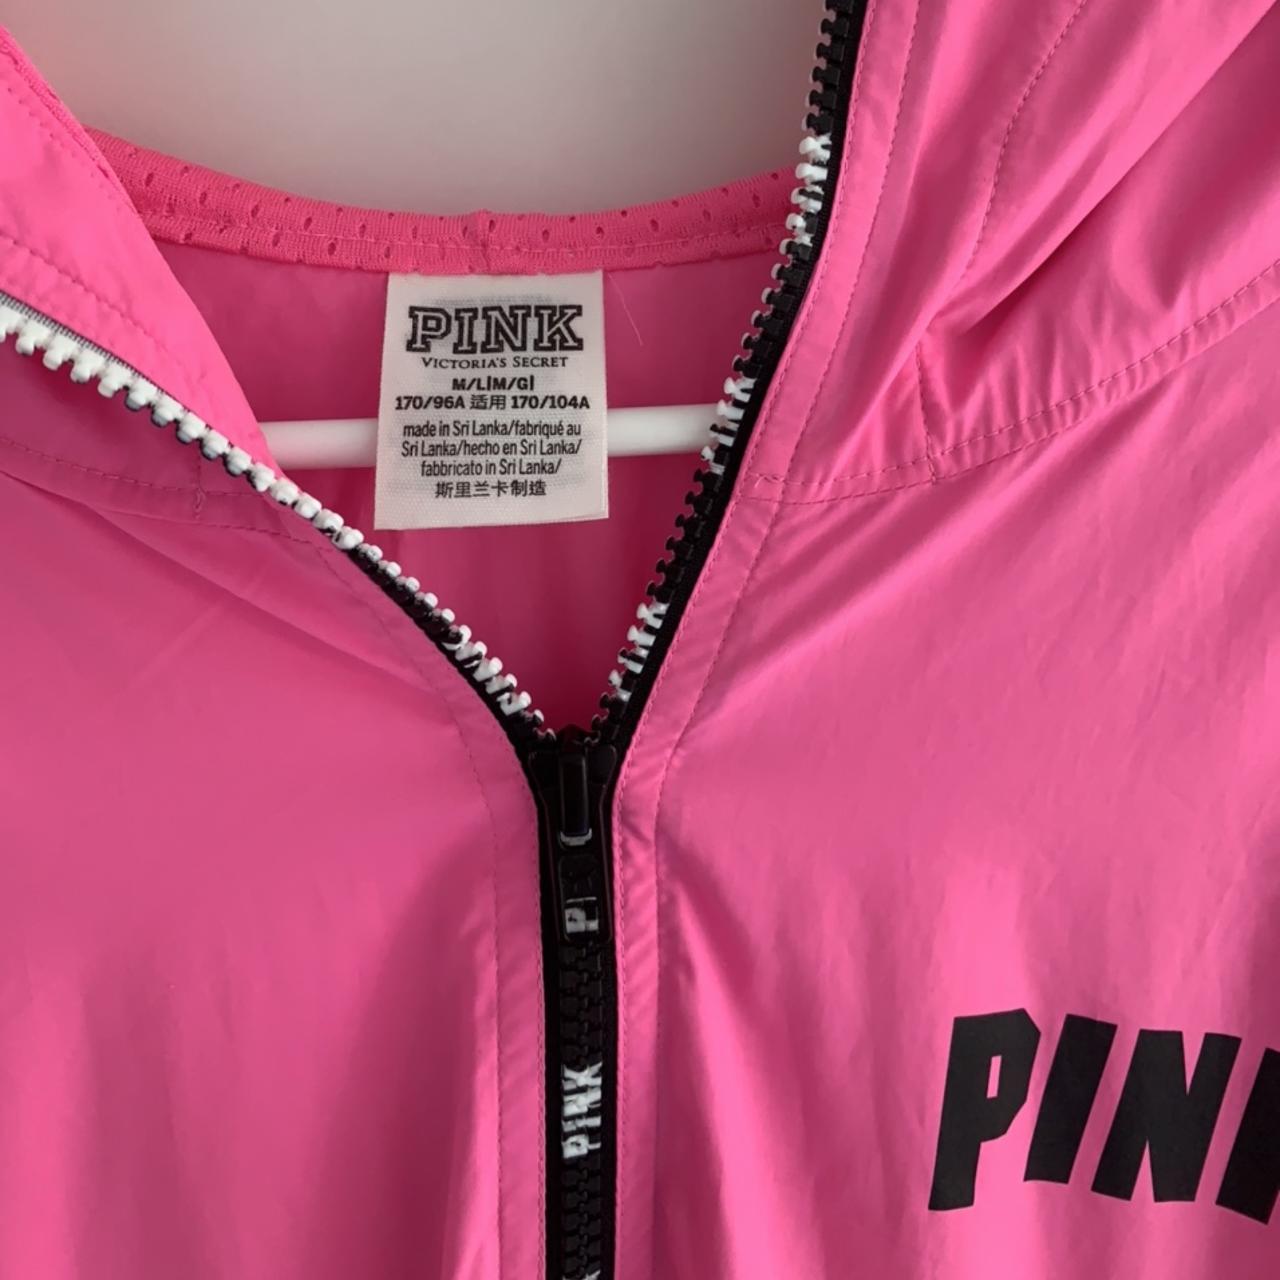 Pink / Victoria secret anorak jacket / windbreaker